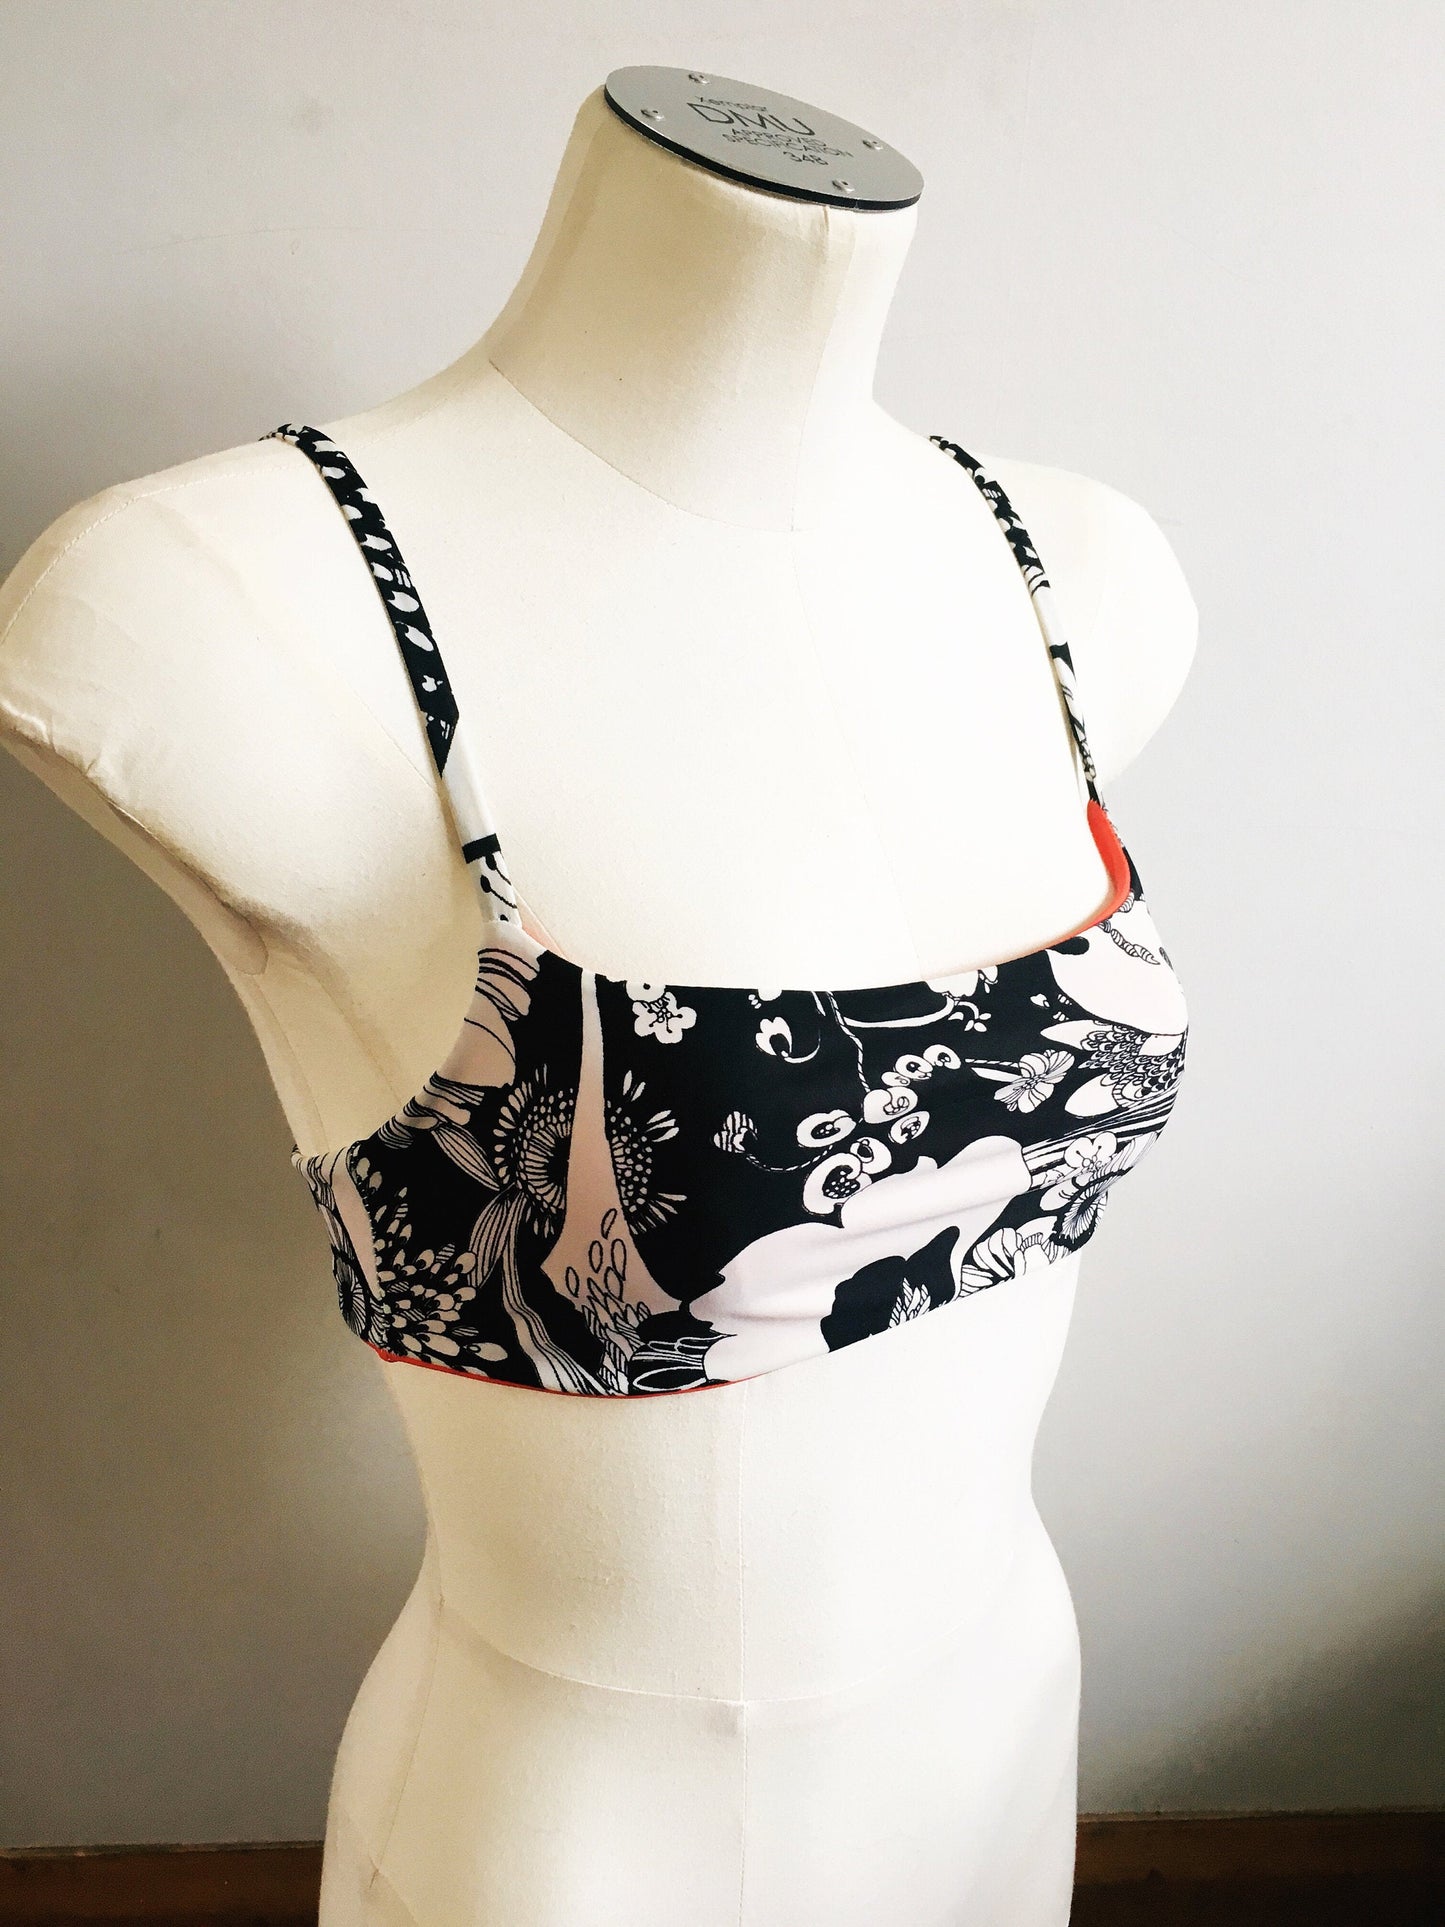 Bikini Top | PDF Sewing Pattern sizes XXS-5XL | Kari